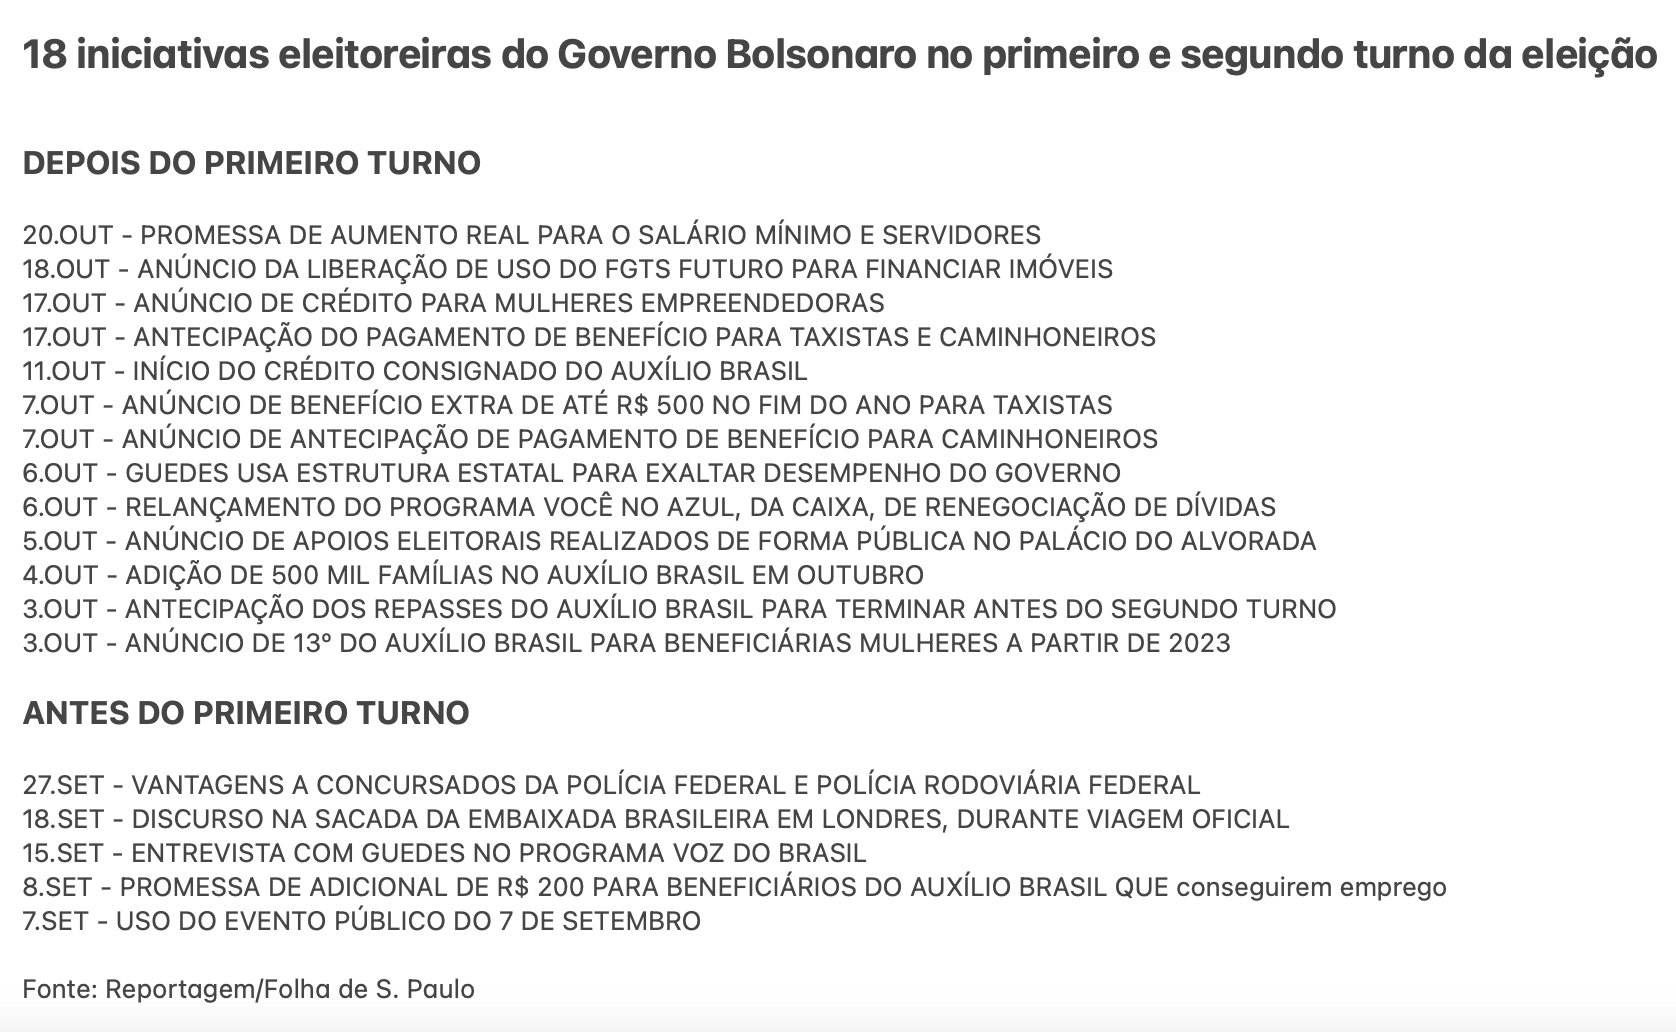 iniciativas eleitoreiras, Bolsonaro 